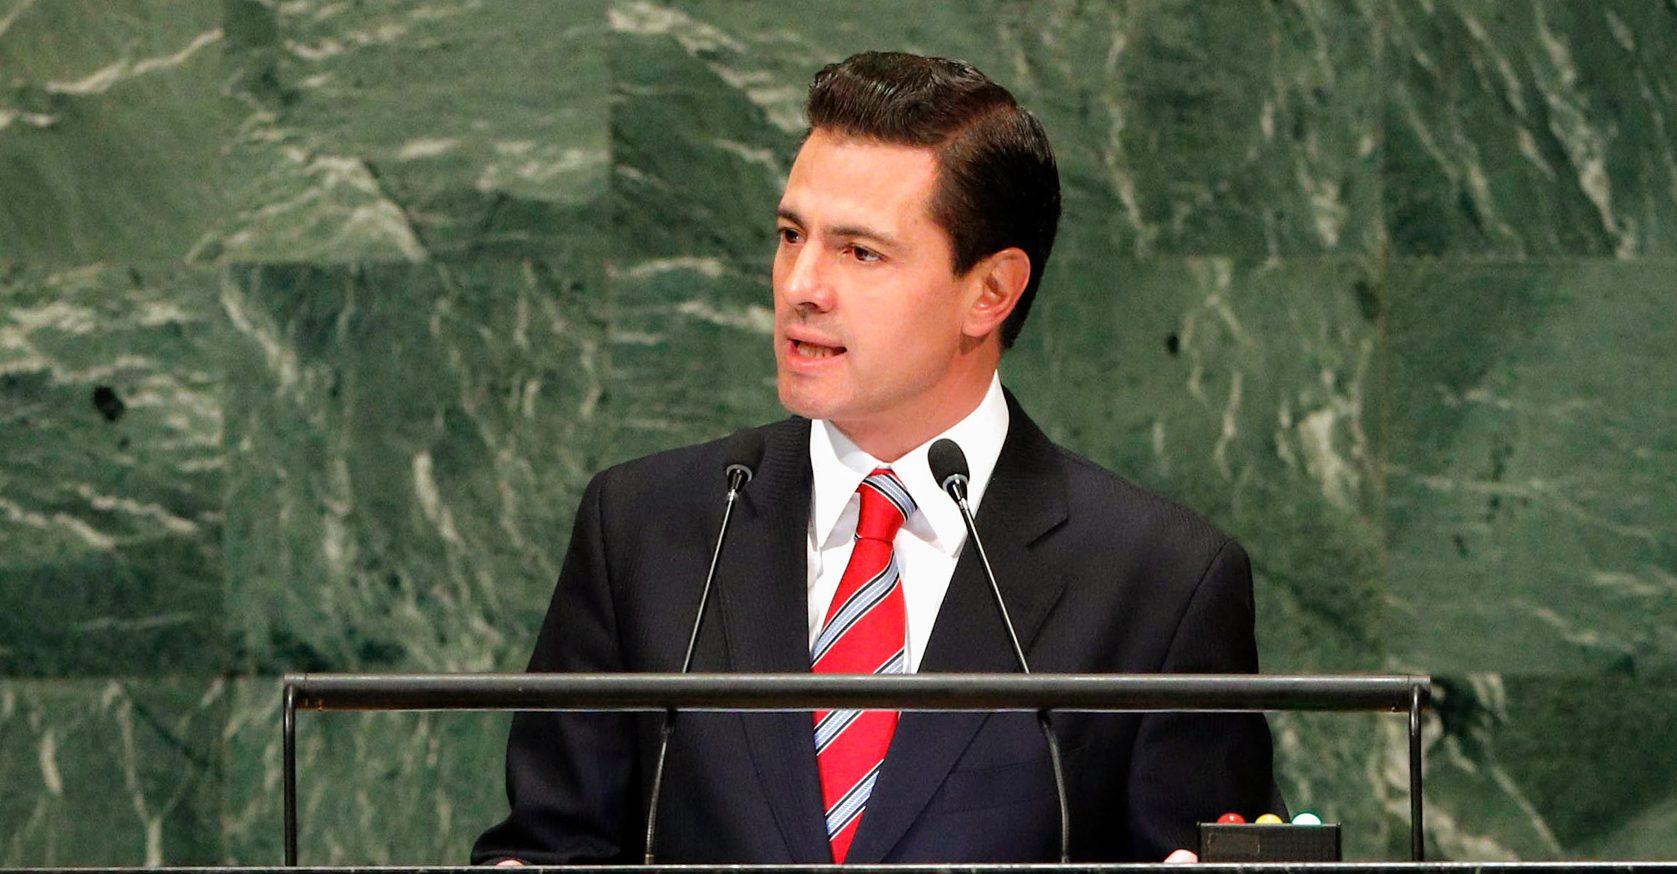 El proyecto de Peña Nieto para ampliar la cobertura de internet no generó competencia ni redujo tarifas